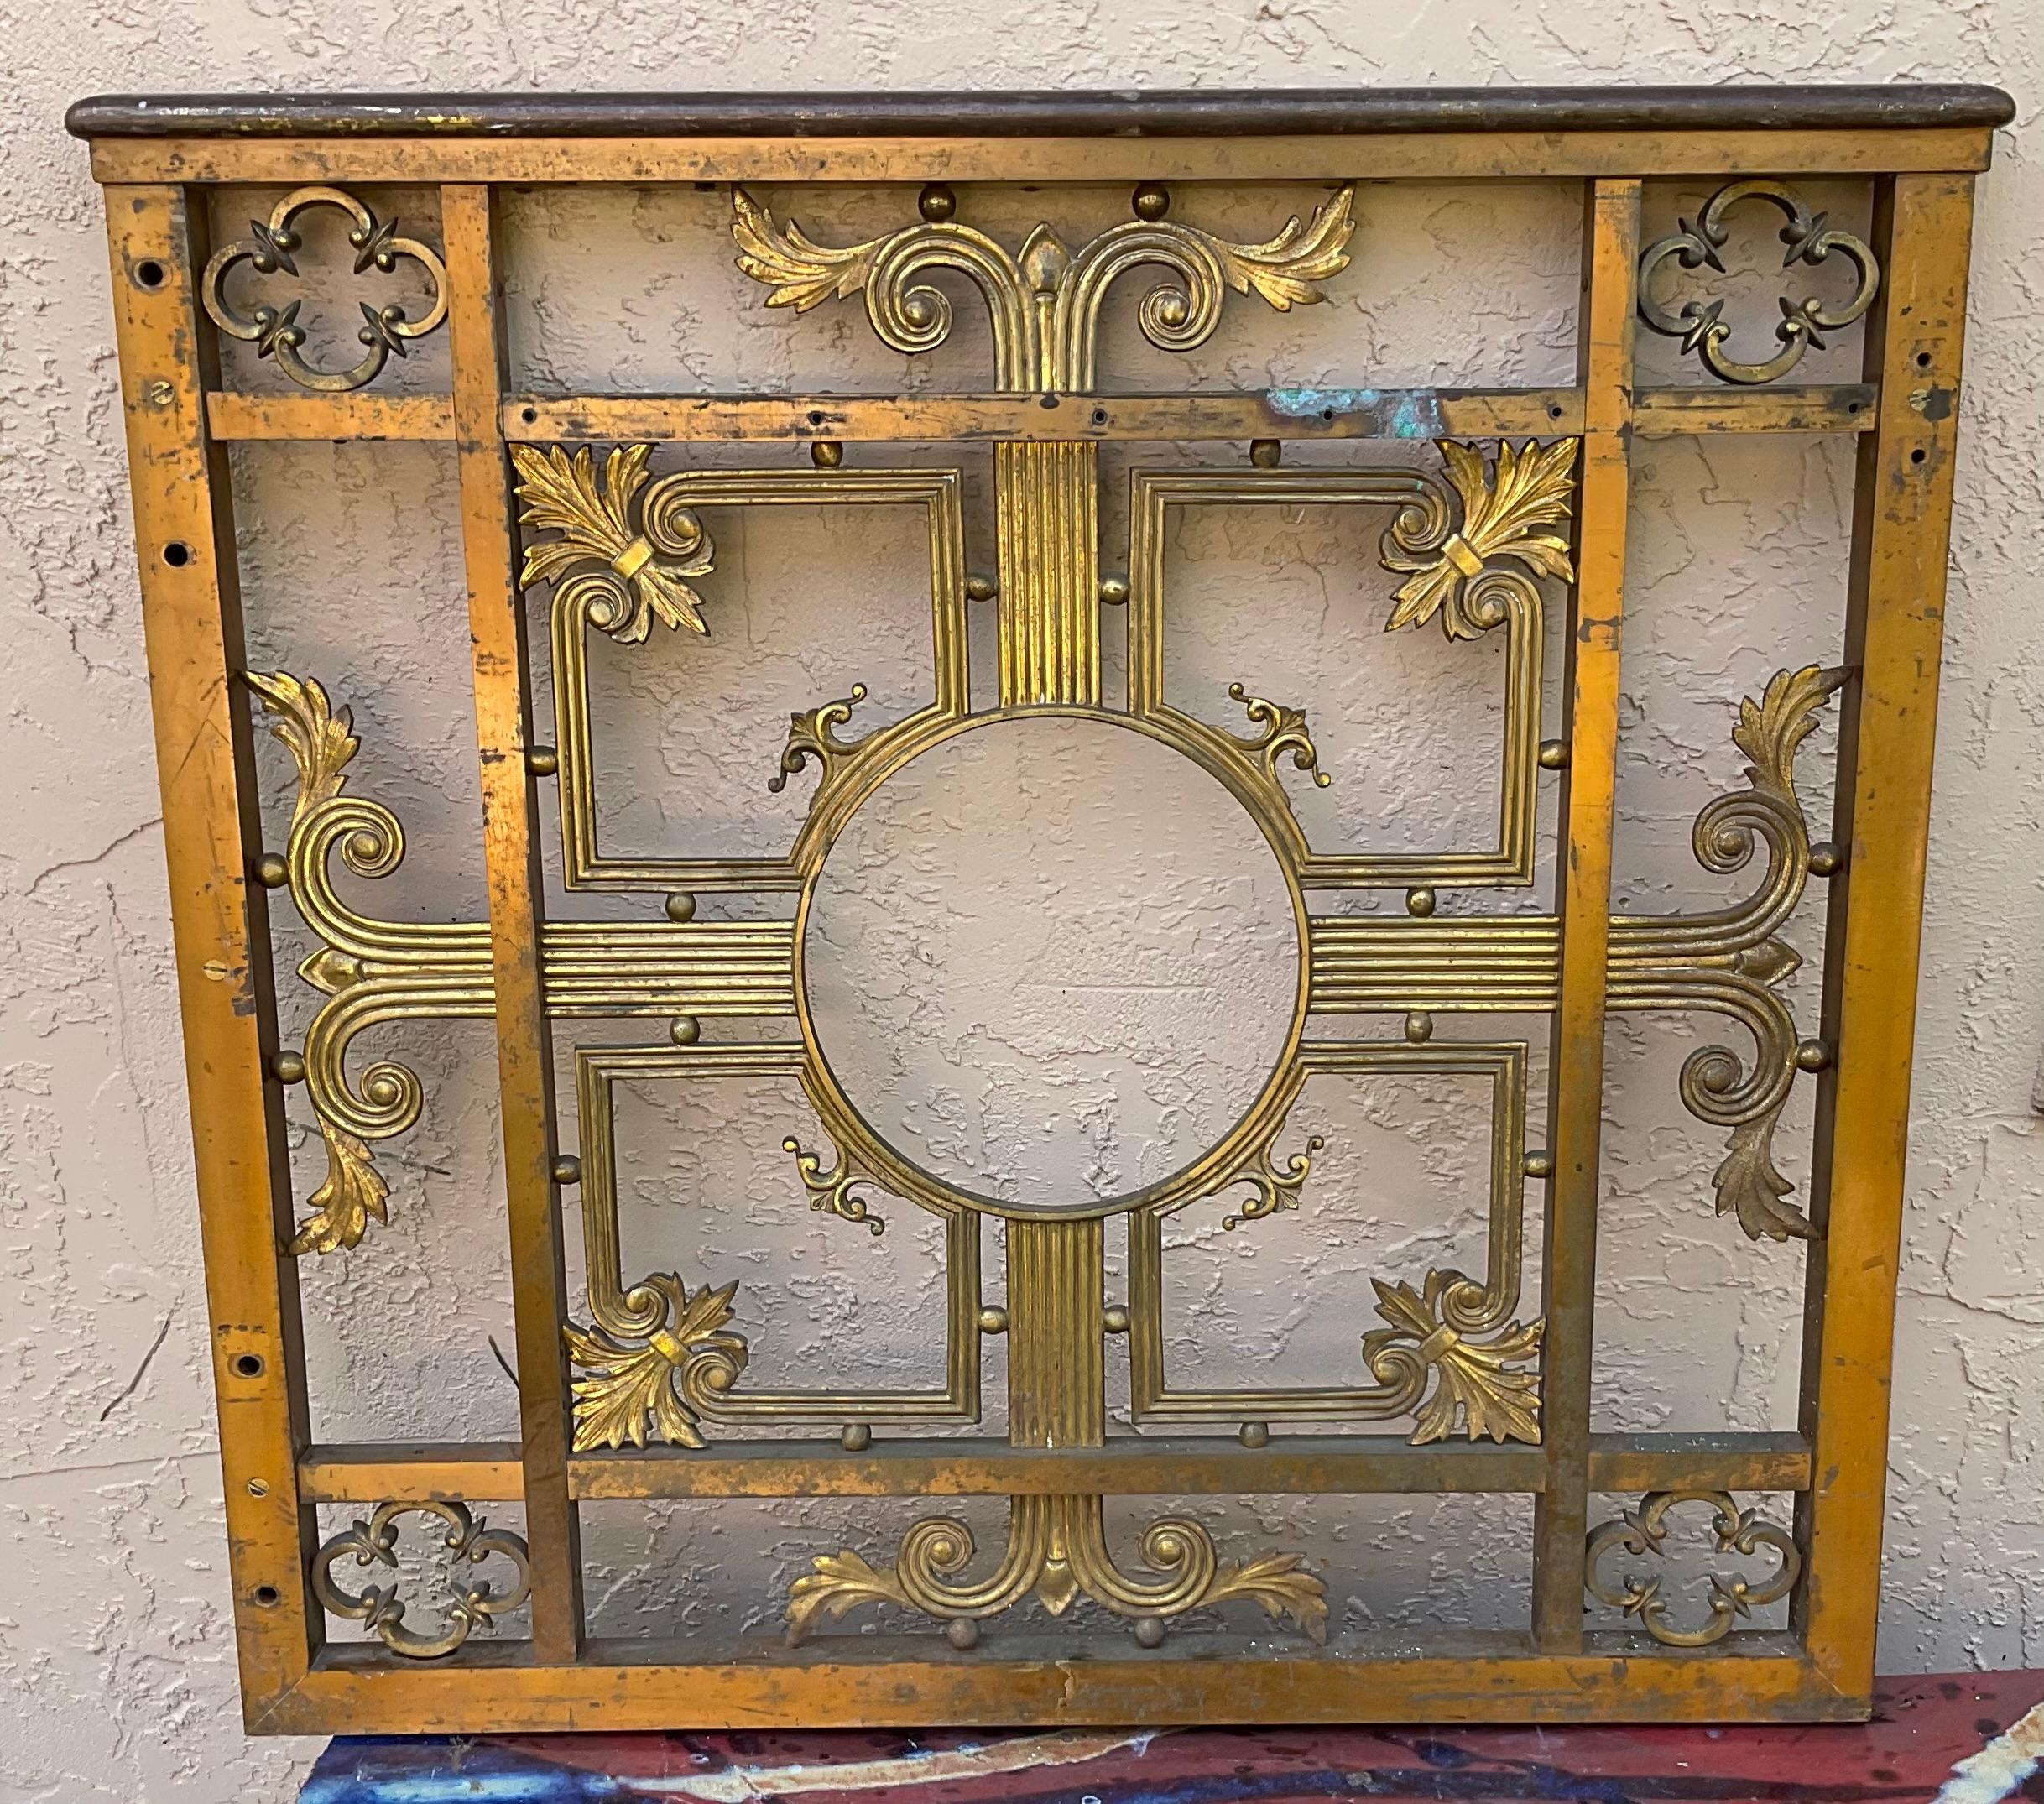 Dieses klassische Bronzetor aus den frühen 1900er Jahren ist ein Fußgänger- oder Gartentor oder eine Zimmertür mit zentralem Medaillon, das wahrscheinlich von einer Bank oder einer großen Institution gerettet wurde.
exquisites und dekoratives Motiv,